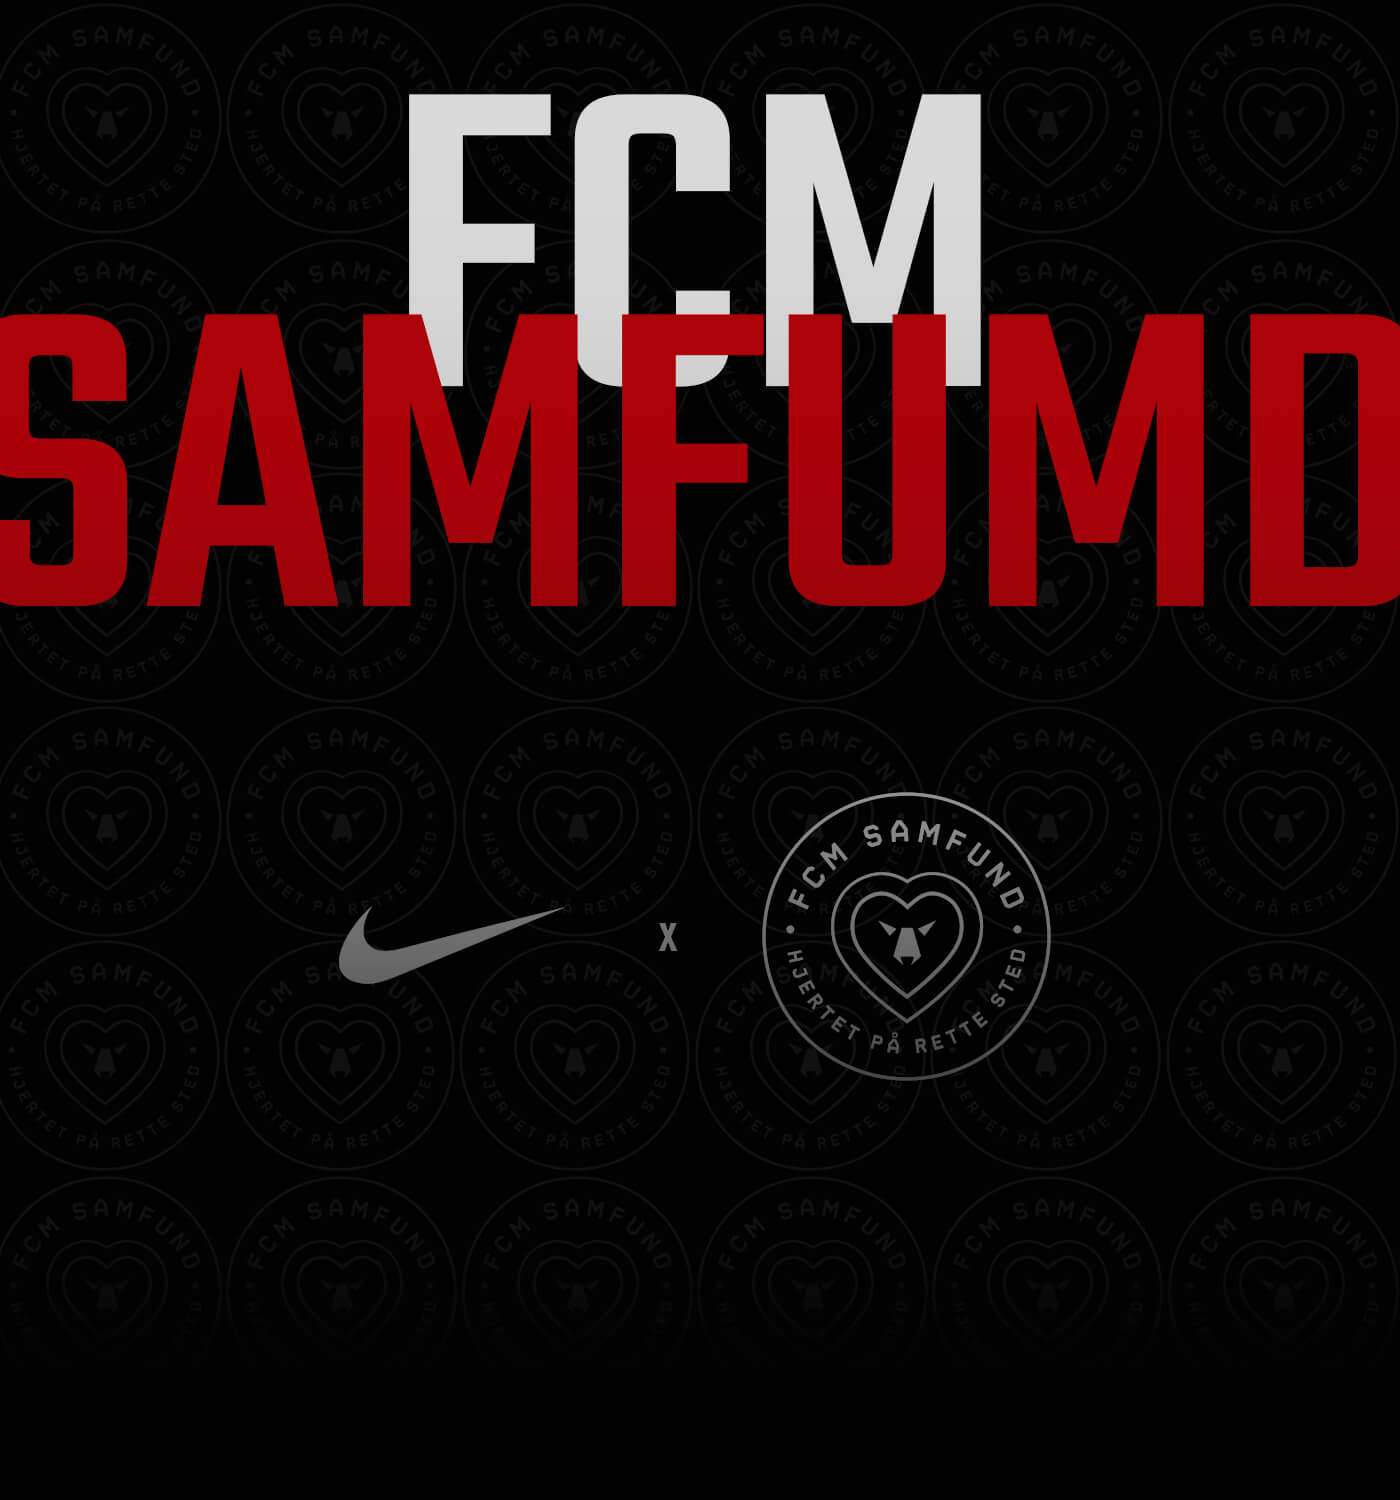 FCM-Samfund projekt showcase